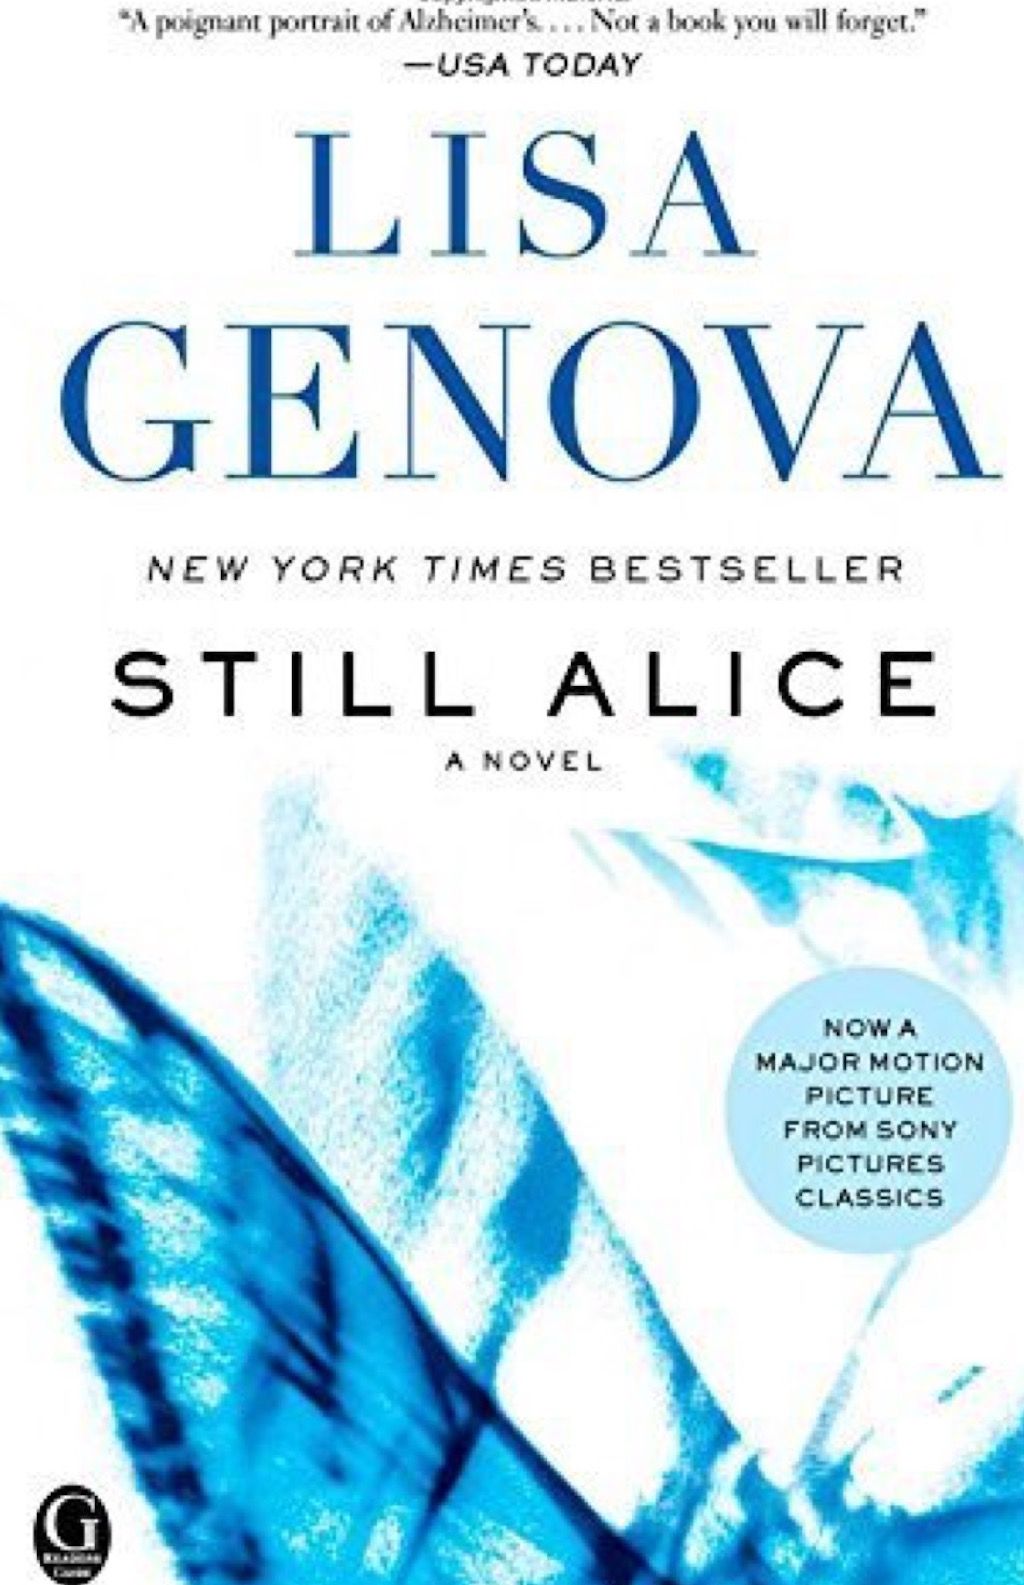 หนังสือ Still Alice by Lisa Genova ผู้หญิงทุกคนควรอ่านในวัย 40 ปี